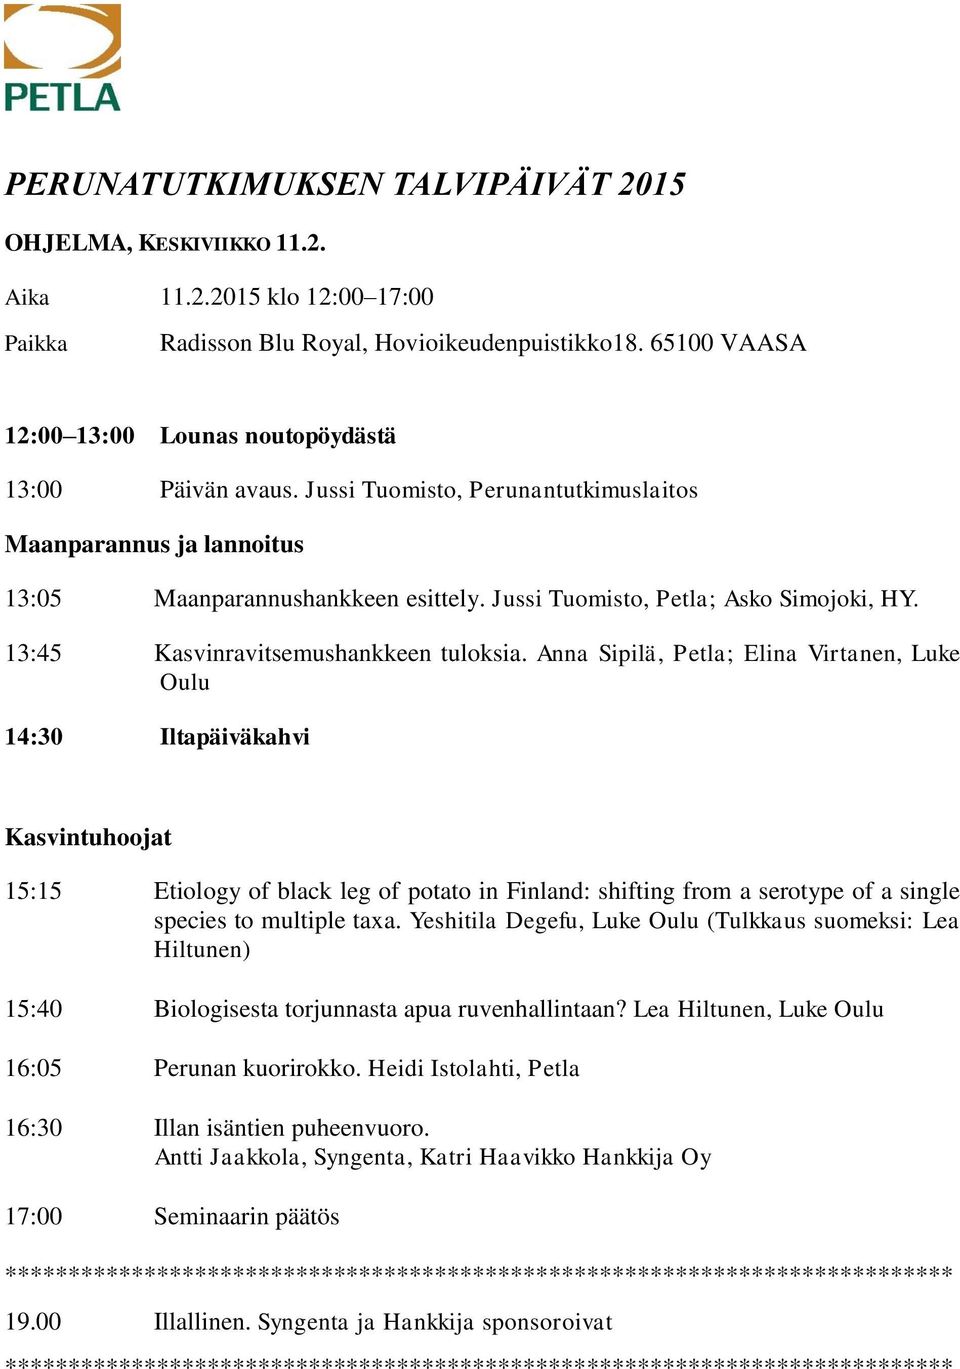 Jussi Tuomisto, Petla; Asko Simojoki, HY. 13:45 Kasvinravitsemushankkeen tuloksia.